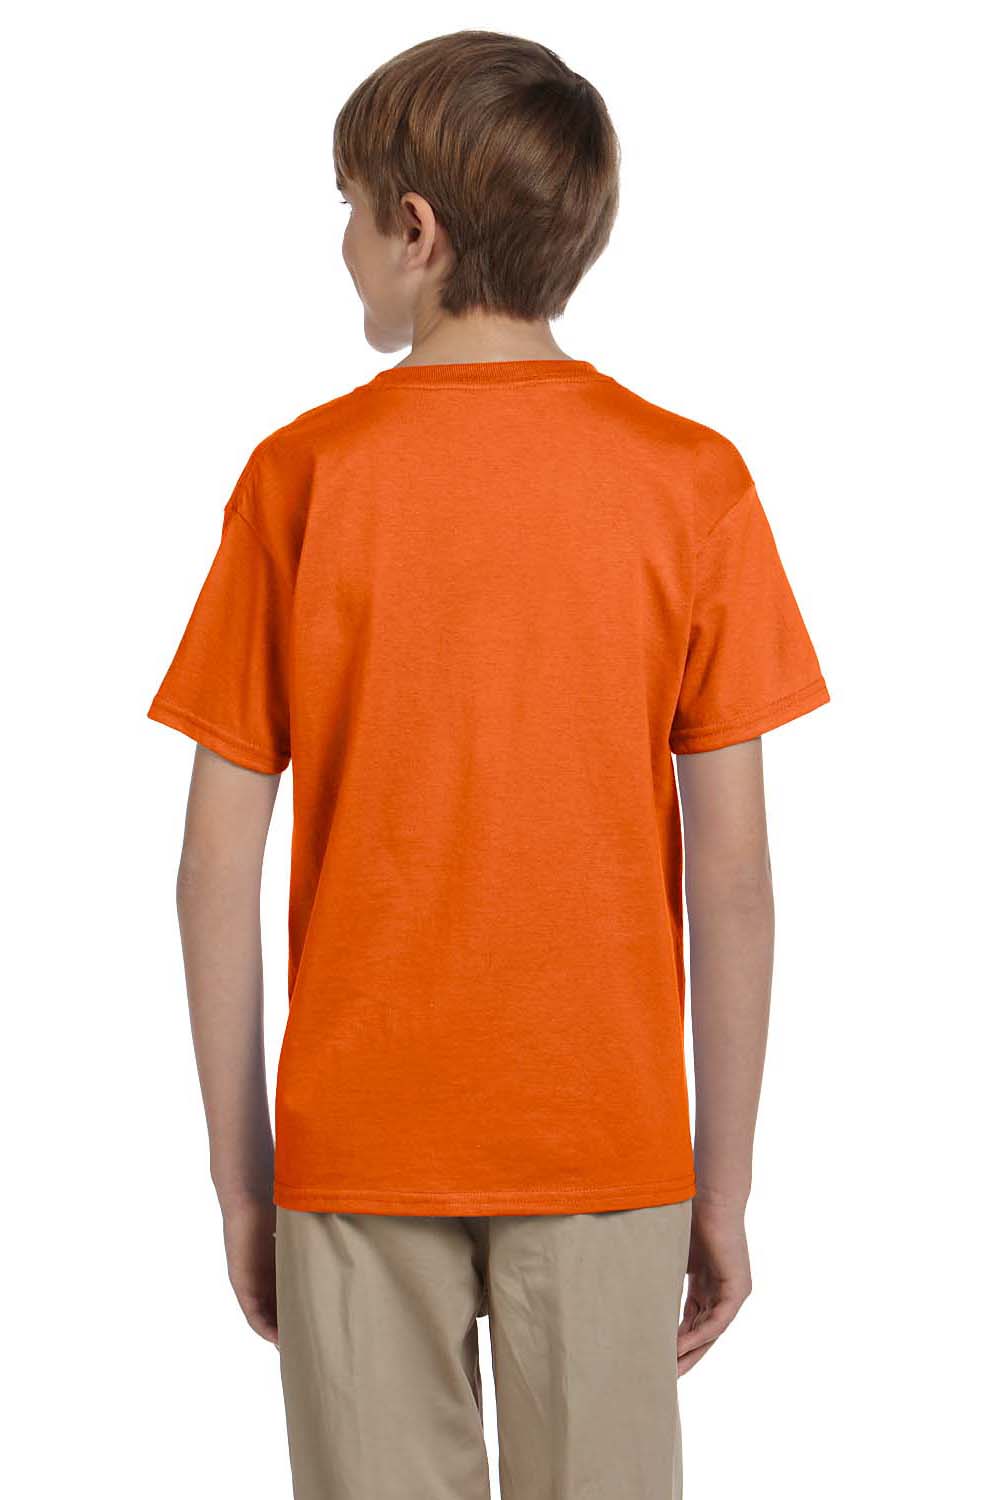 Hanes 5370 Youth EcoSmart Short Sleeve Crewneck T-Shirt Orange Back